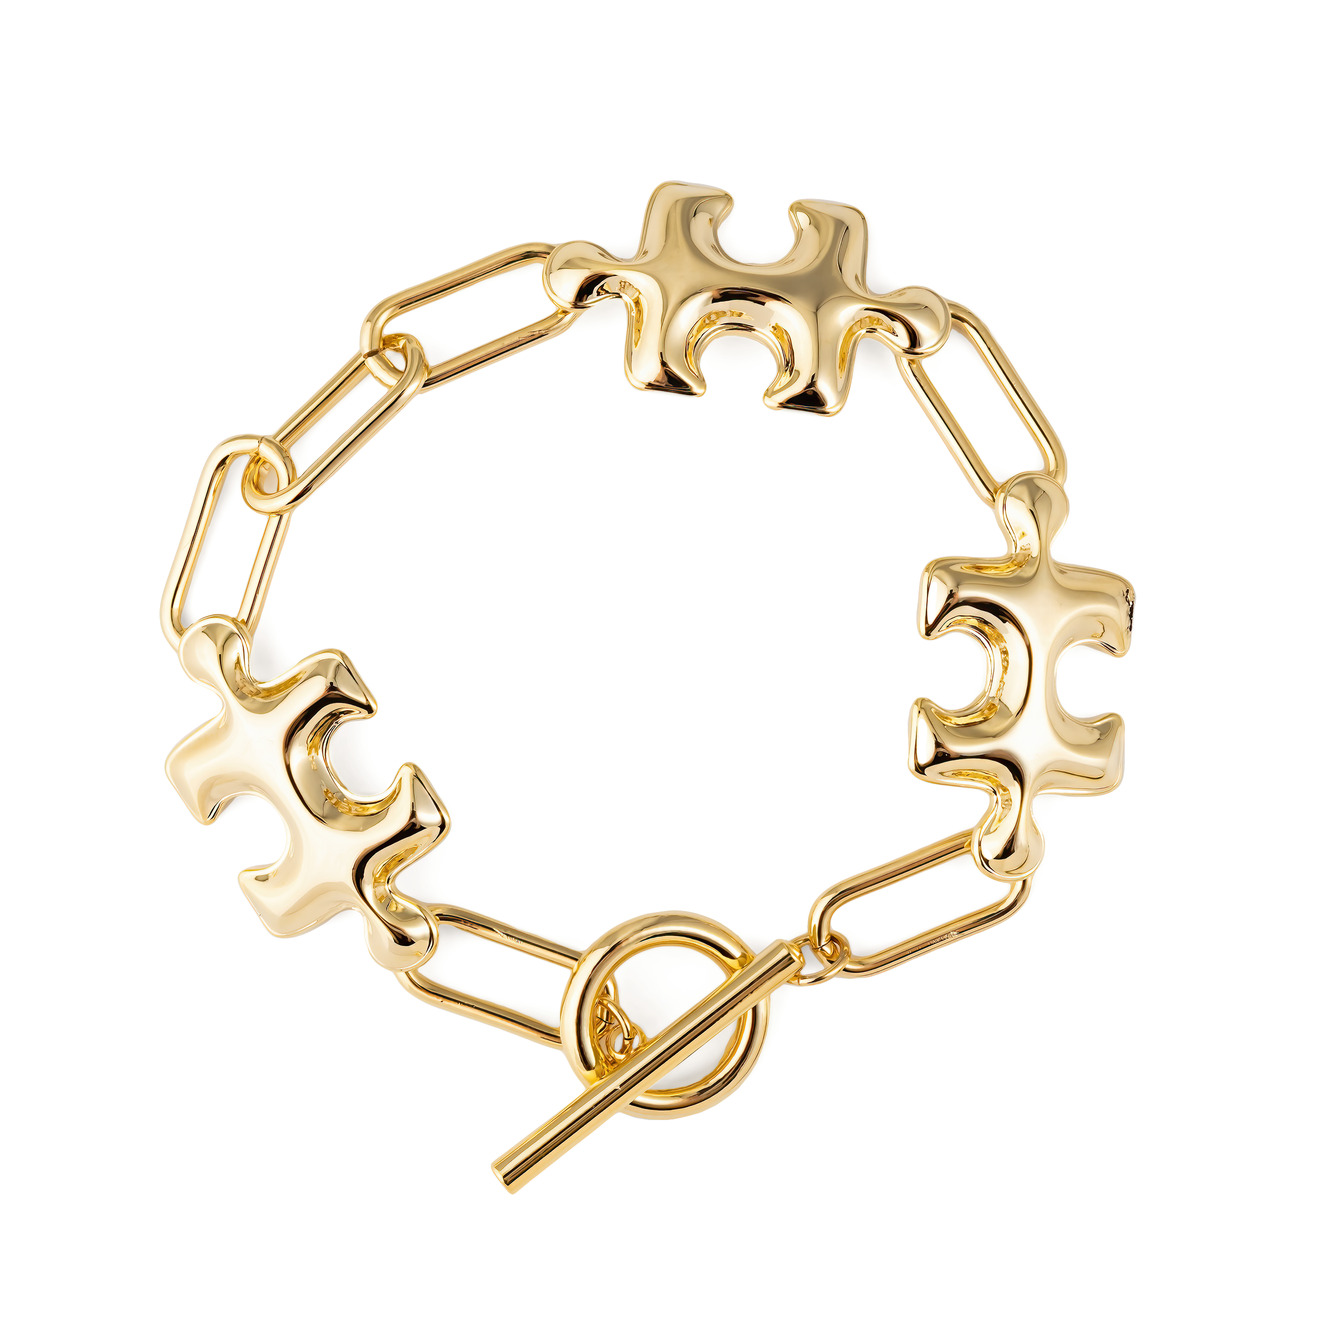 Aqua Золотистый браслет с дутыми пазлами lisa smith золотистый открытый браслет с античным мужским ликом